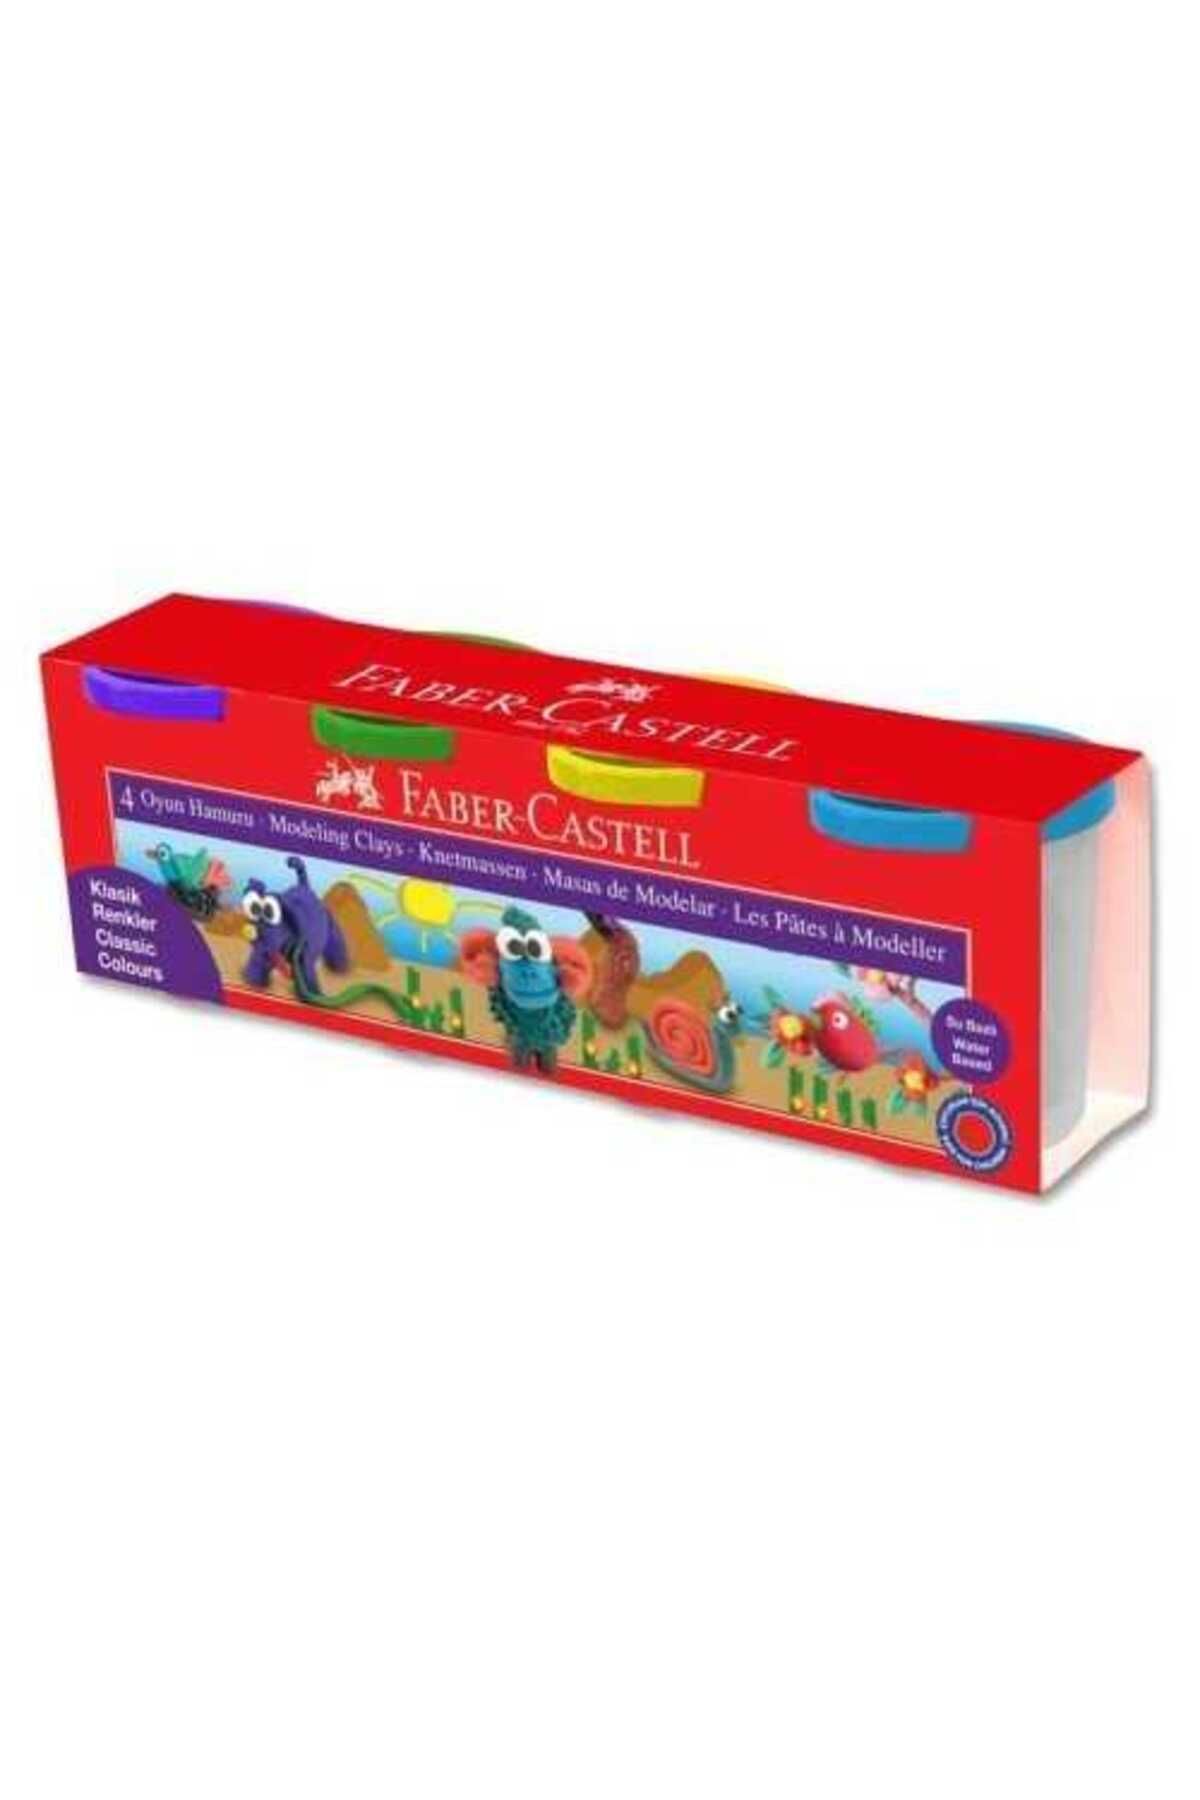 Faber Castell 4 Renk Pastel Renk Oyun Hamuru